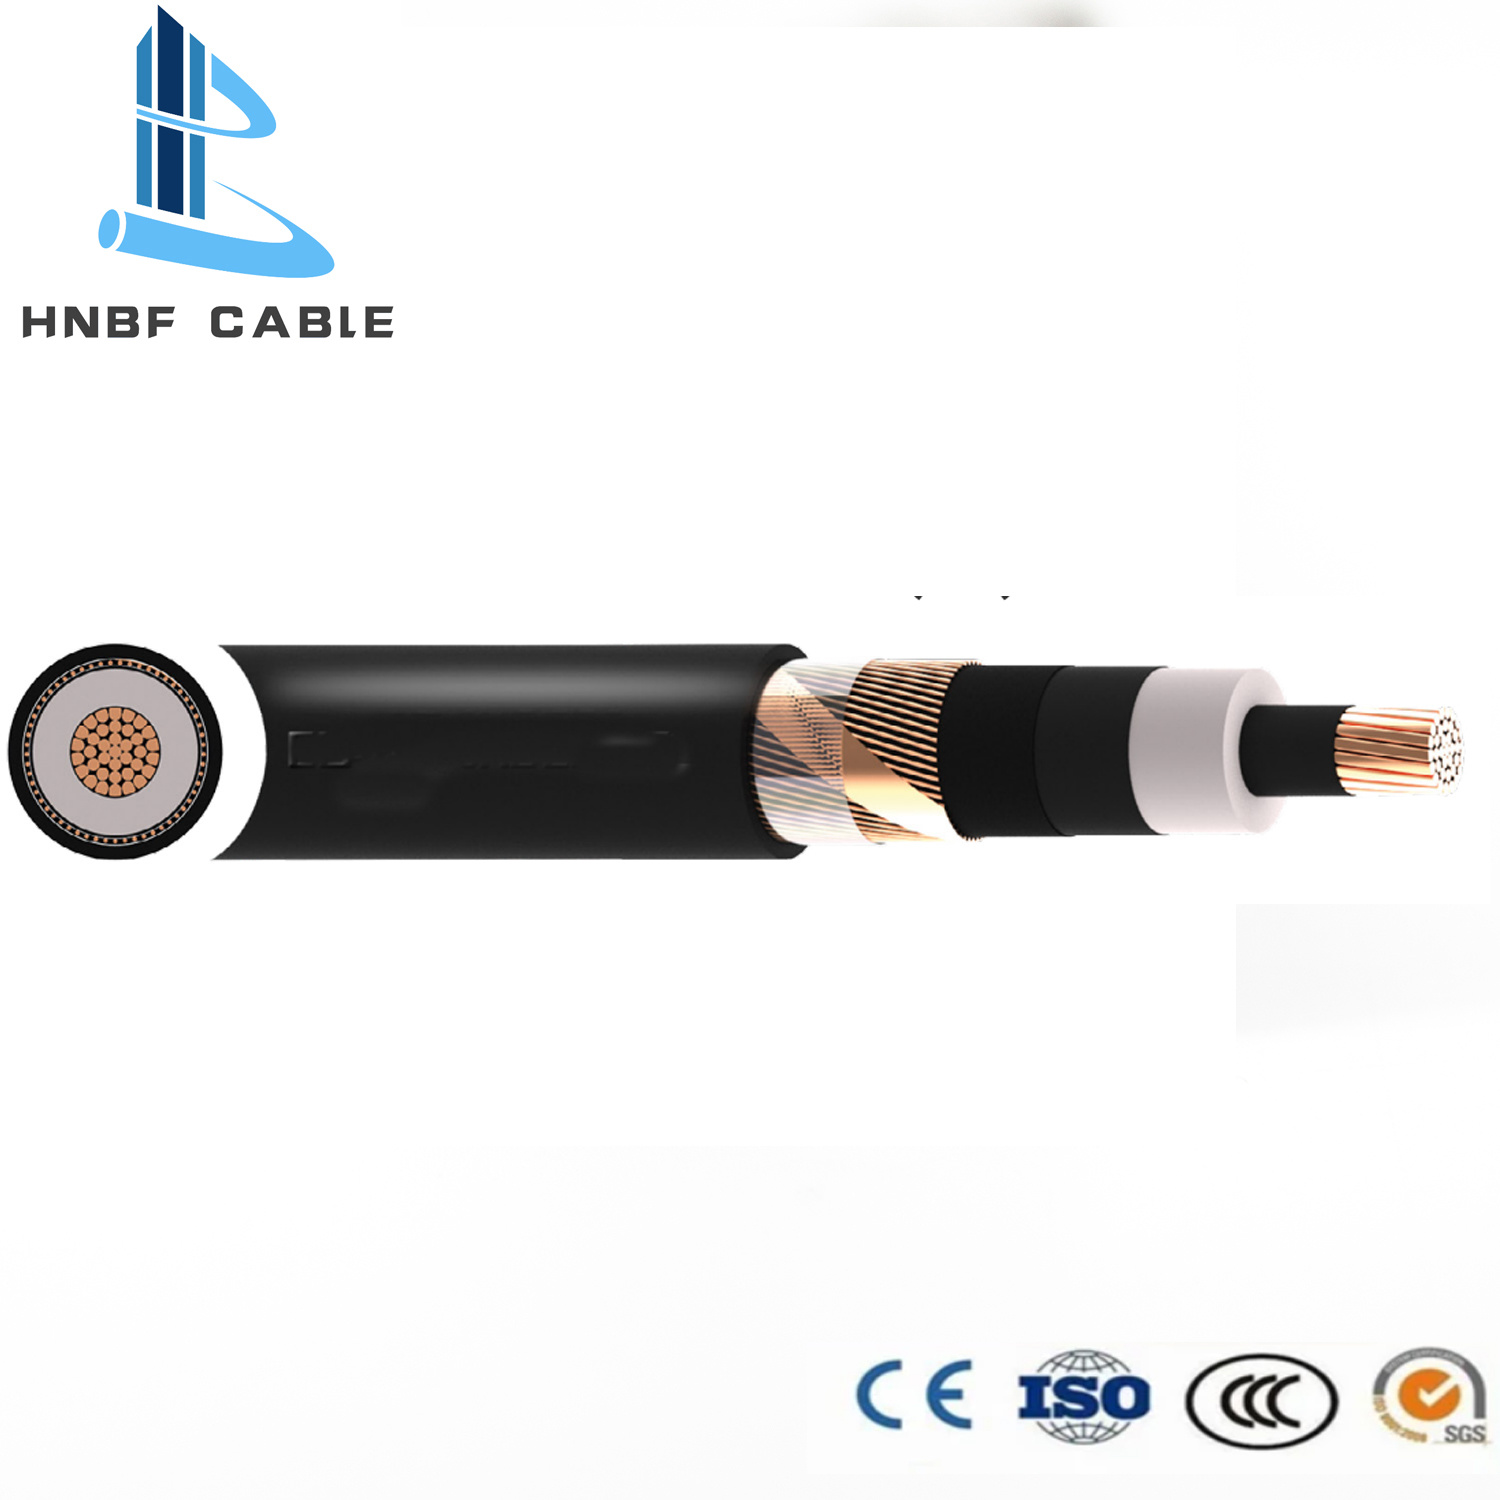 
                        Medium Voltage Single Core Cable 6/10 Kv, 12/20 Kv, 18/30 Kv, 19/33kv N2xs2y / N2xs (F) 2y / N2xs (FL) 2y Cables
                    